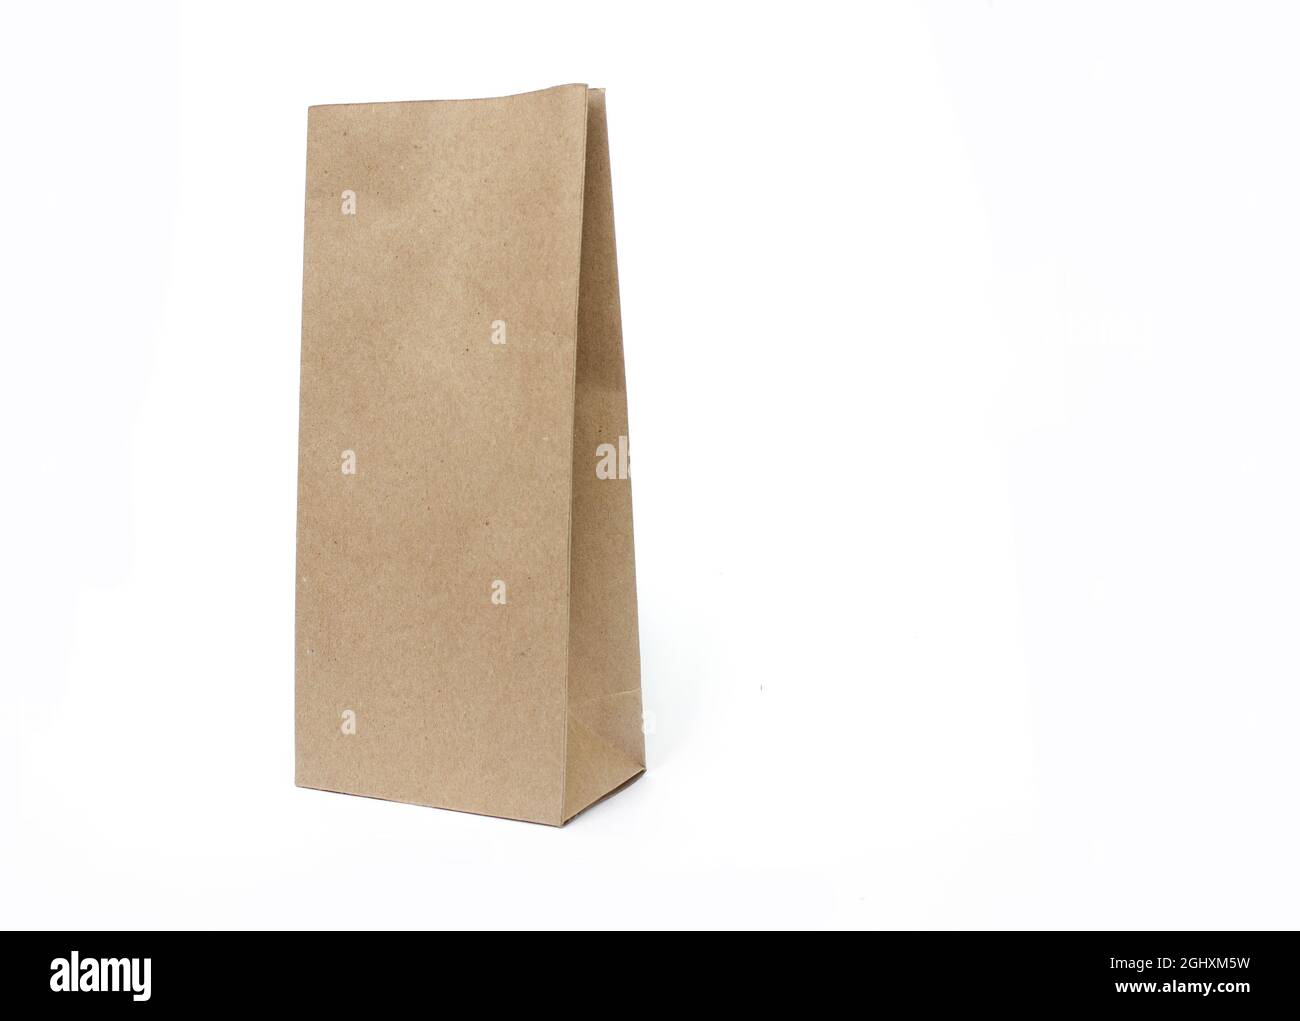 Modèle d'emballage de sac artisanal en papier marron isolé sur fond blanc. Vue avant et vue arrière.ensemble demi-vue latérale Banque D'Images